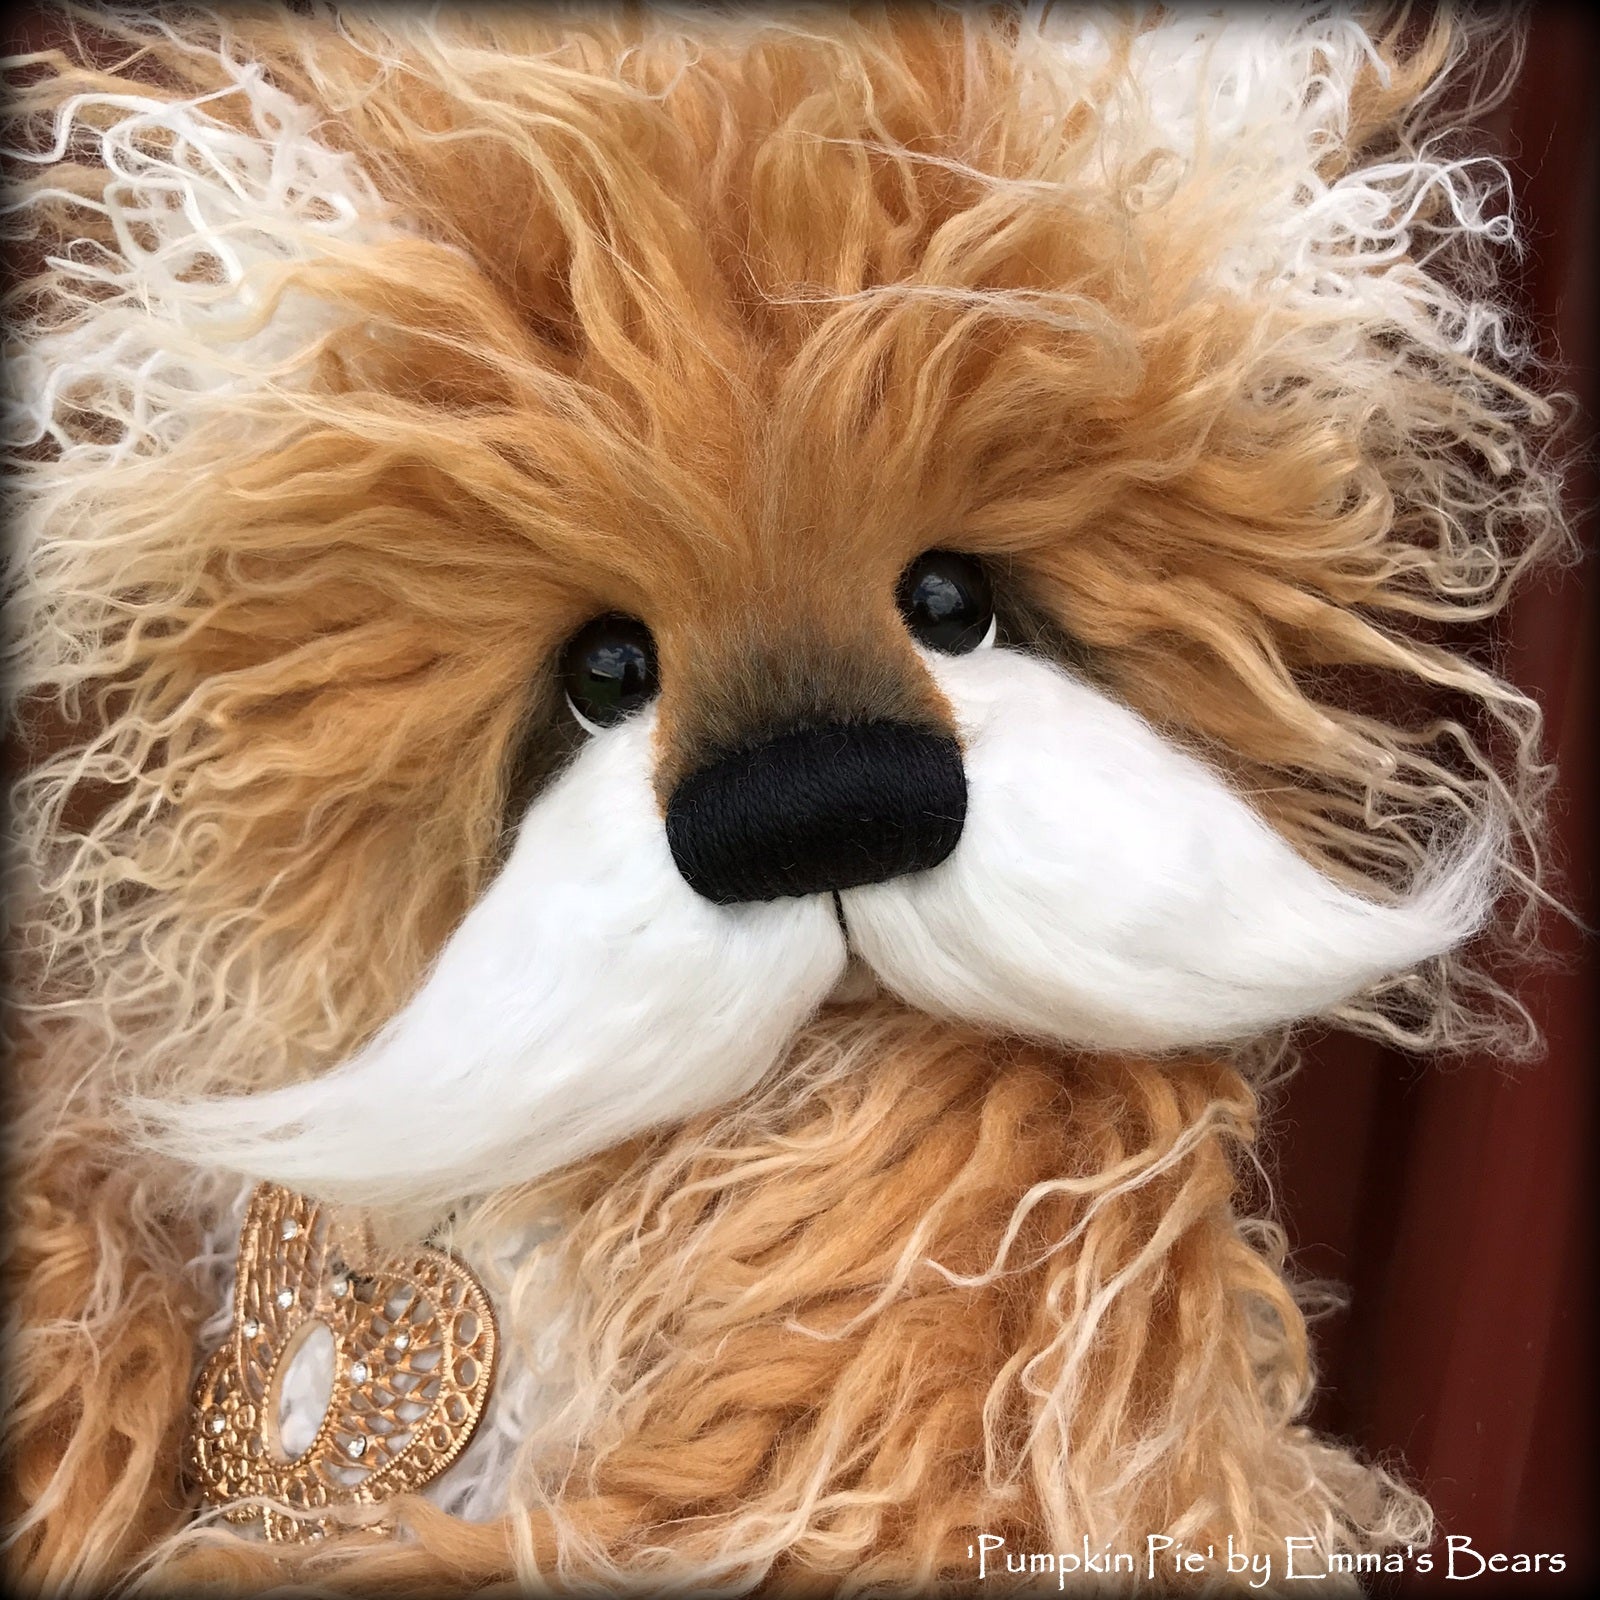 Pumpkin Pie - 15" faux fur Artist Bear by Emma's Bears - OOAK